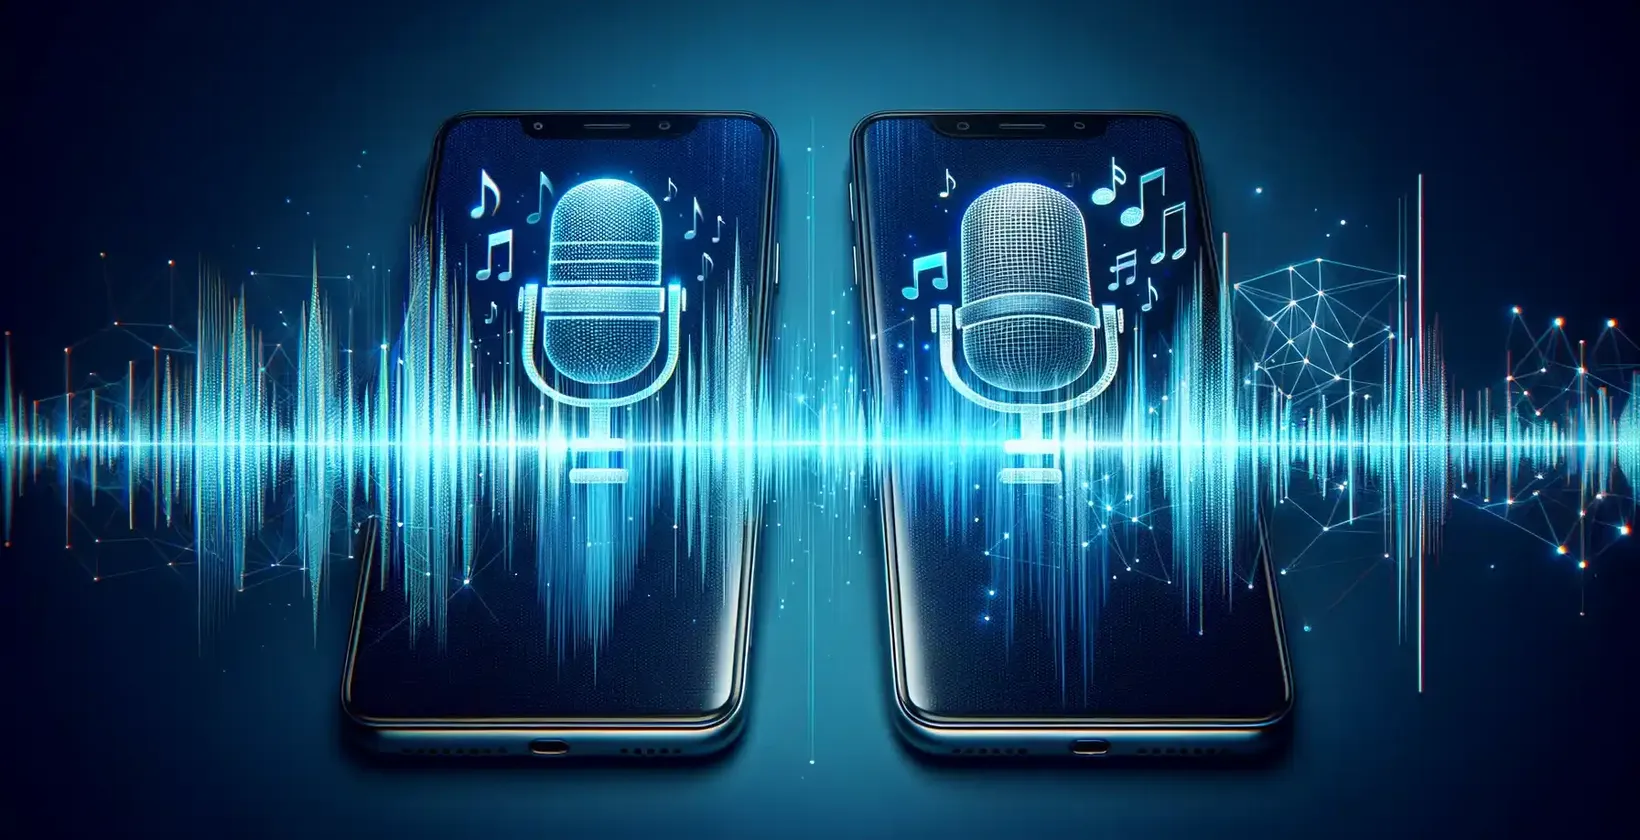 Δύο smartphones με ζωντανά εικονίδια μικροφώνου ανάμεσα σε ψηφιακές κυματομορφές, που συμβολίζουν τις υπηρεσίες μεταγραφής.